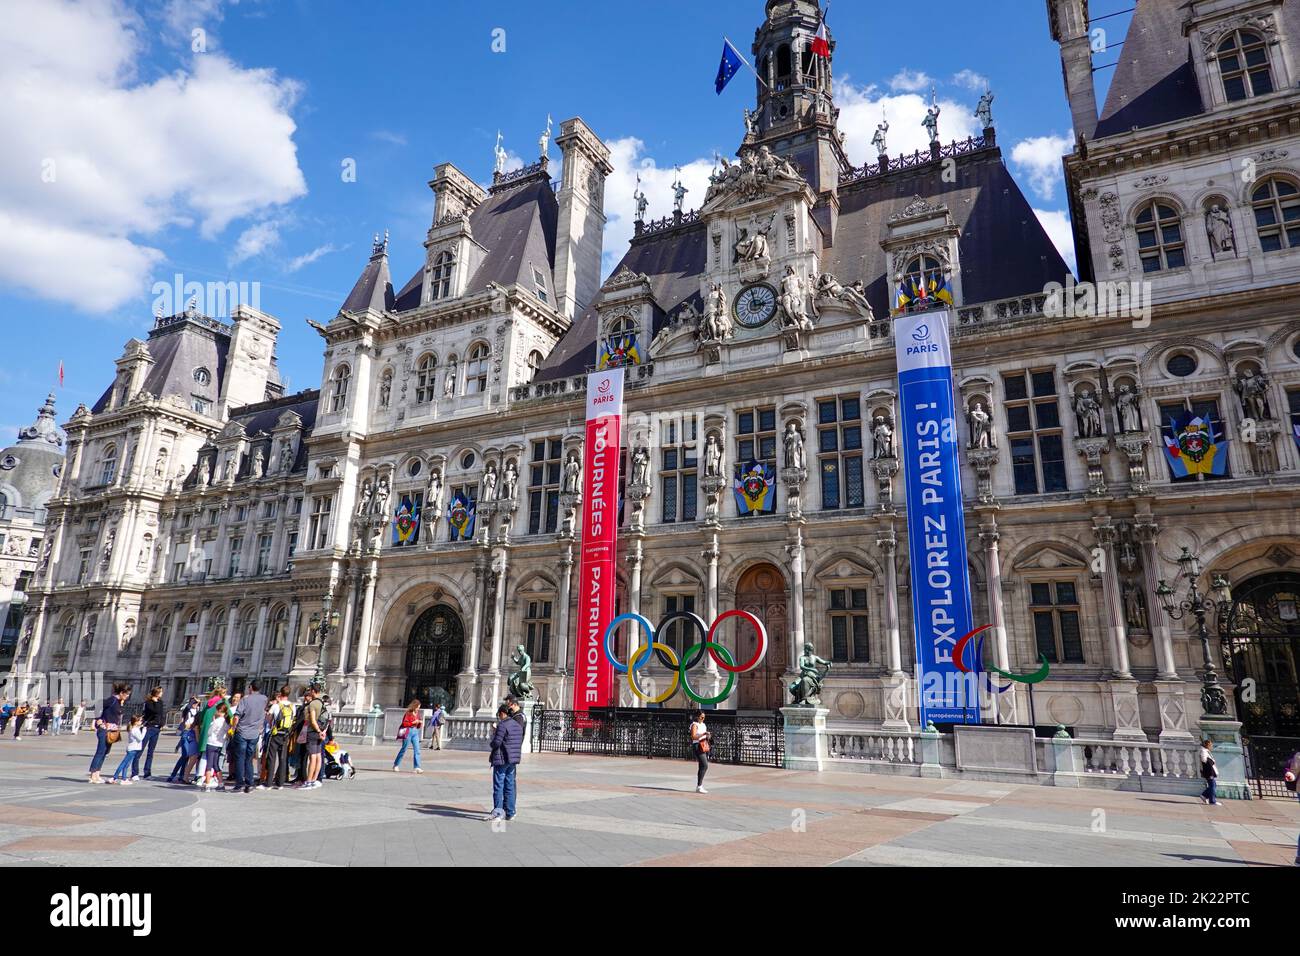 People in front of the Hotel de Ville, City Hall, during European Heritage days, Journées du Patrimoine 2022, Paris, France. Stock Photo